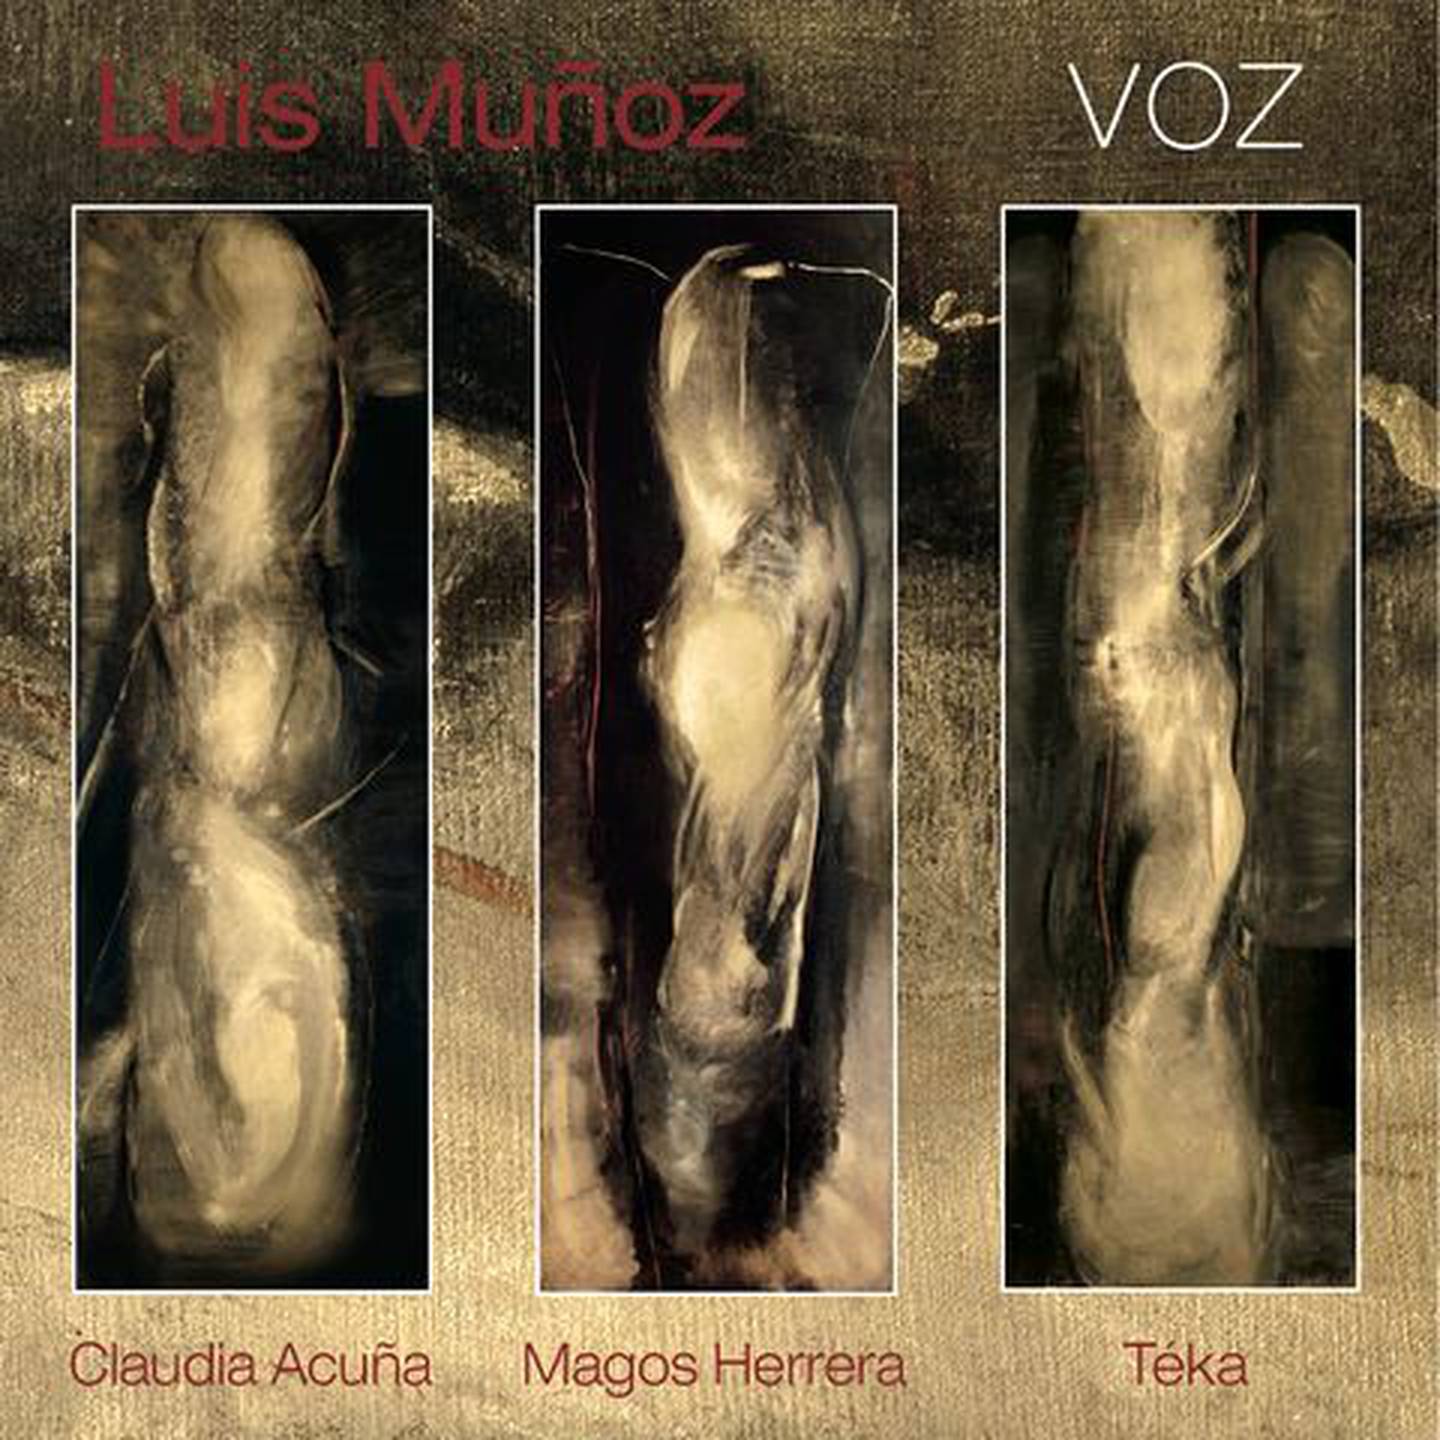 Fotografías del jazzista Luis Muñoz, Pelín.